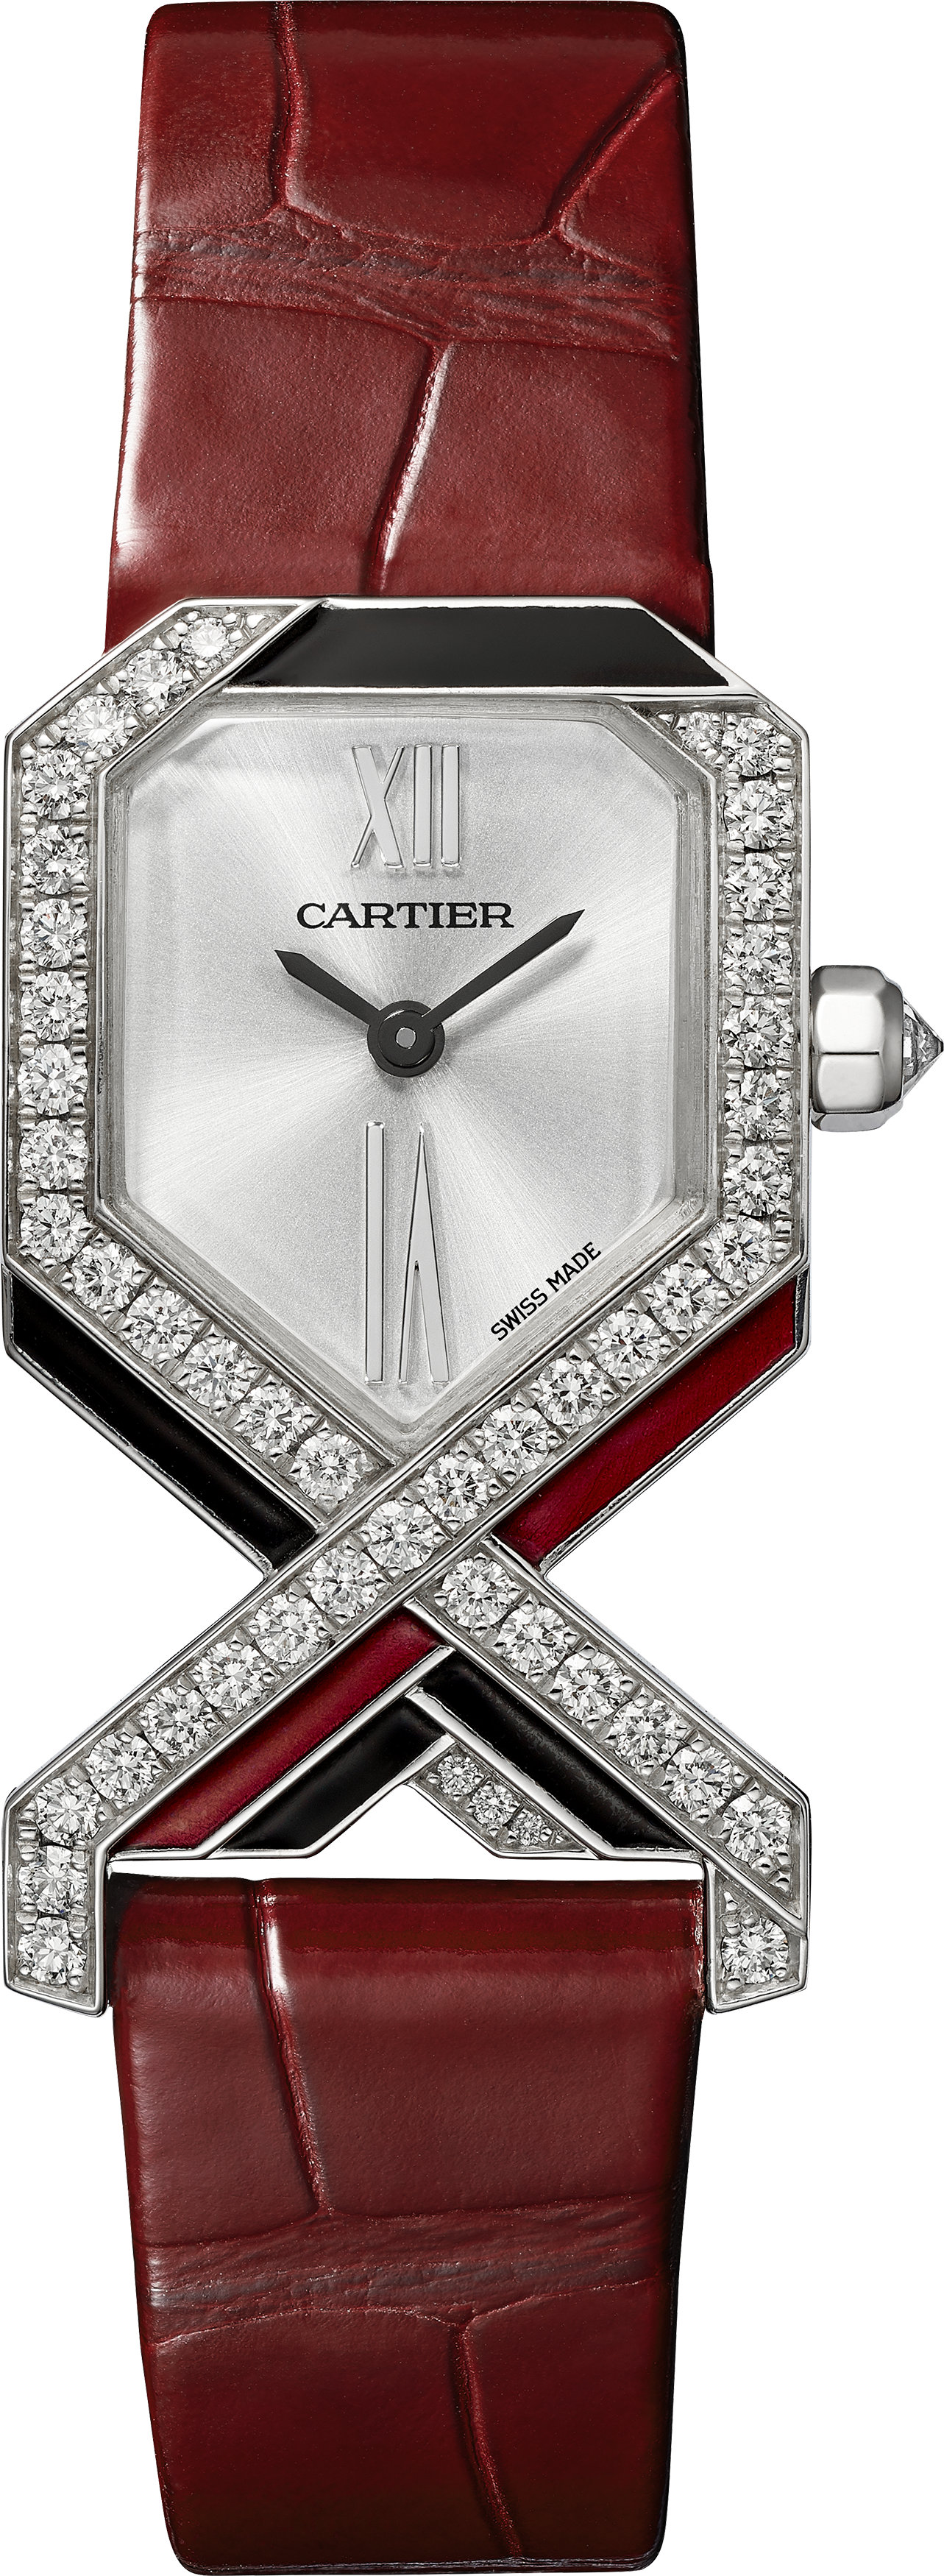 Pre-SIHH 2019: Cartier Libre Diagonale watch